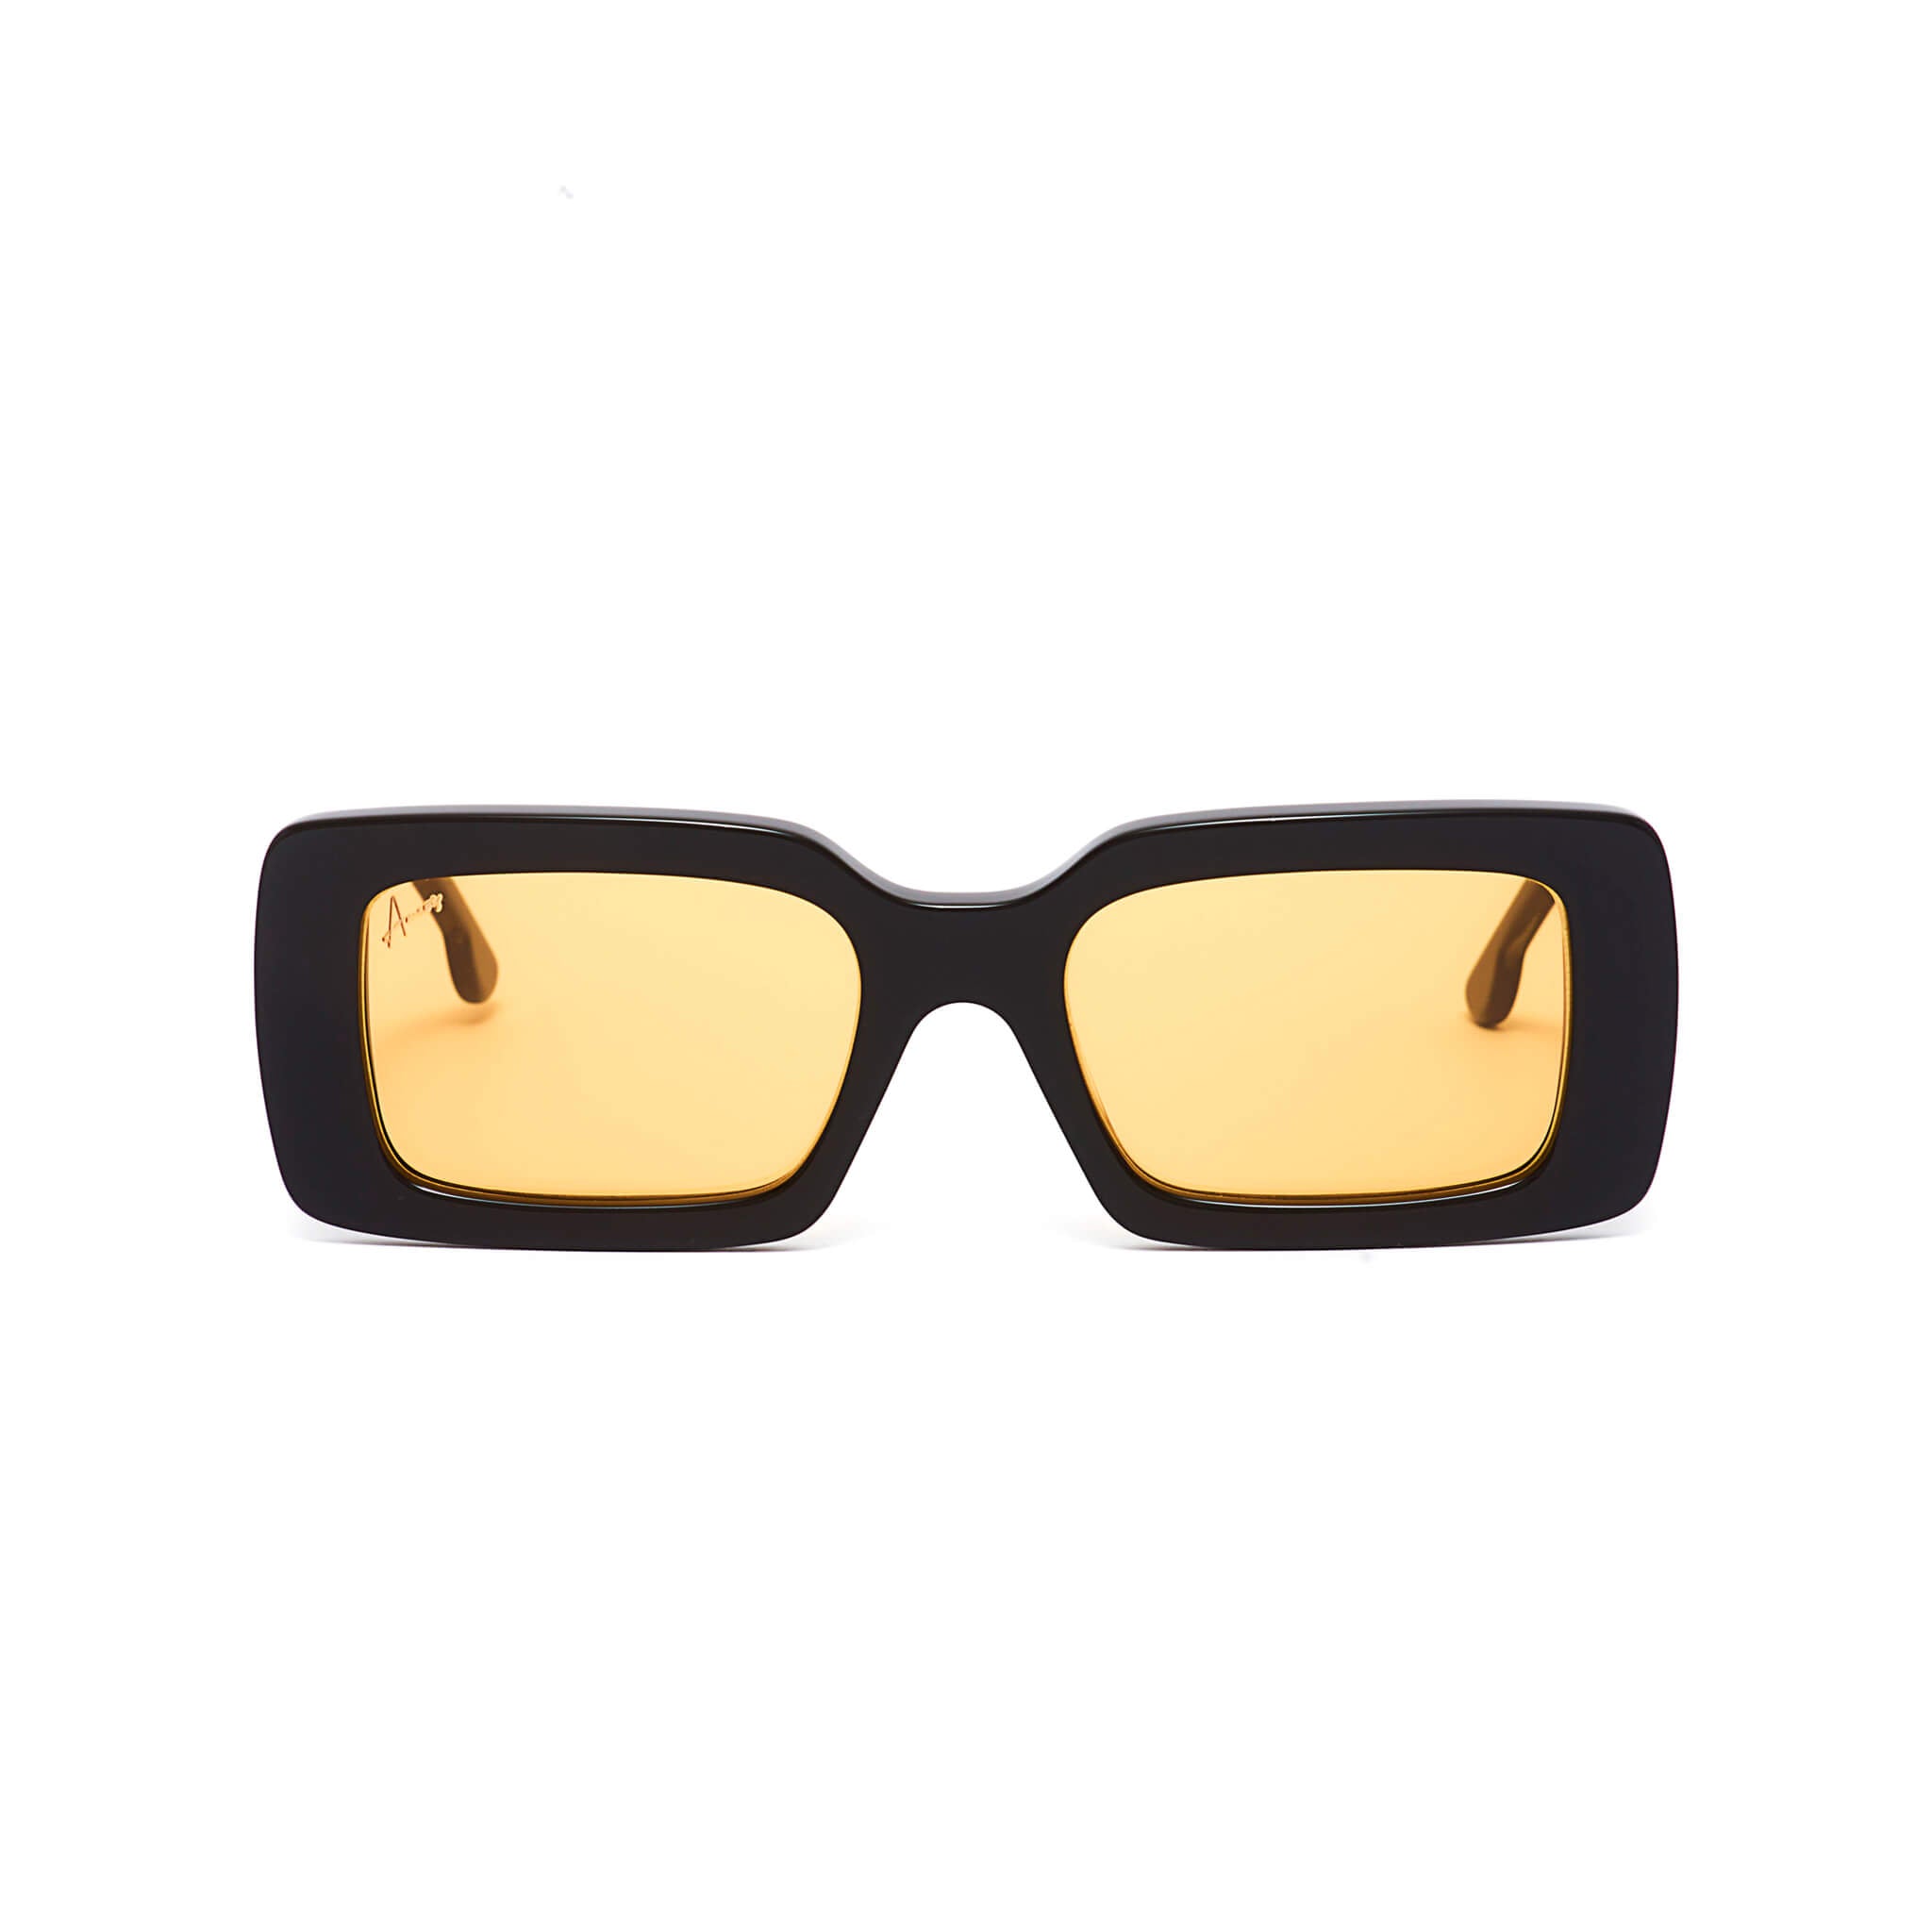 Rectangular black frames with orange lenses sunglasses